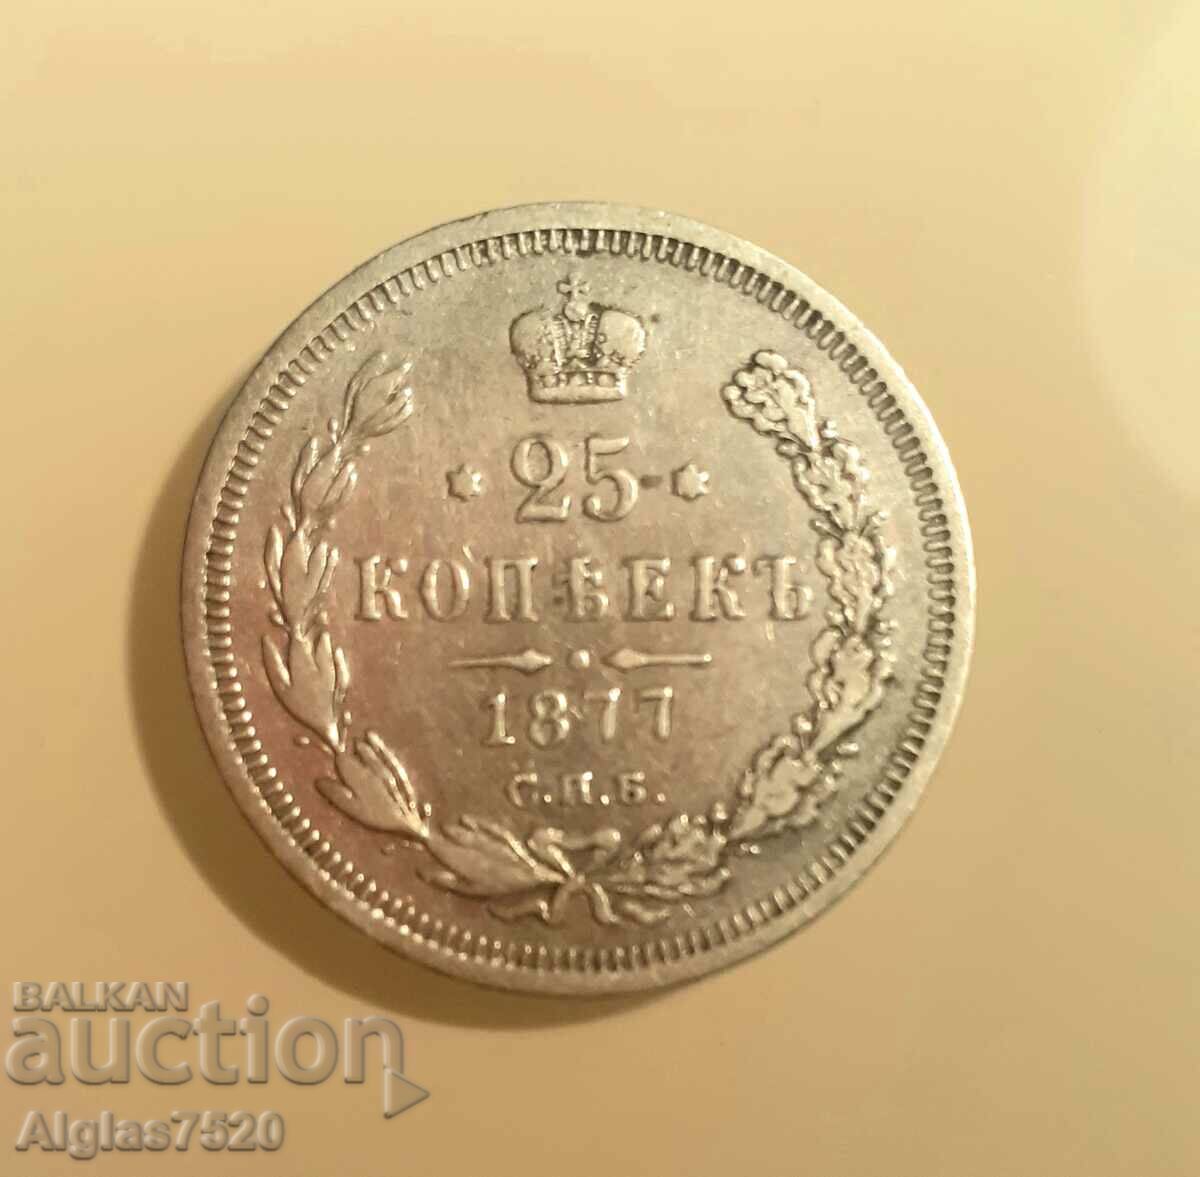 25 kopecks 1877 Russia/silver/